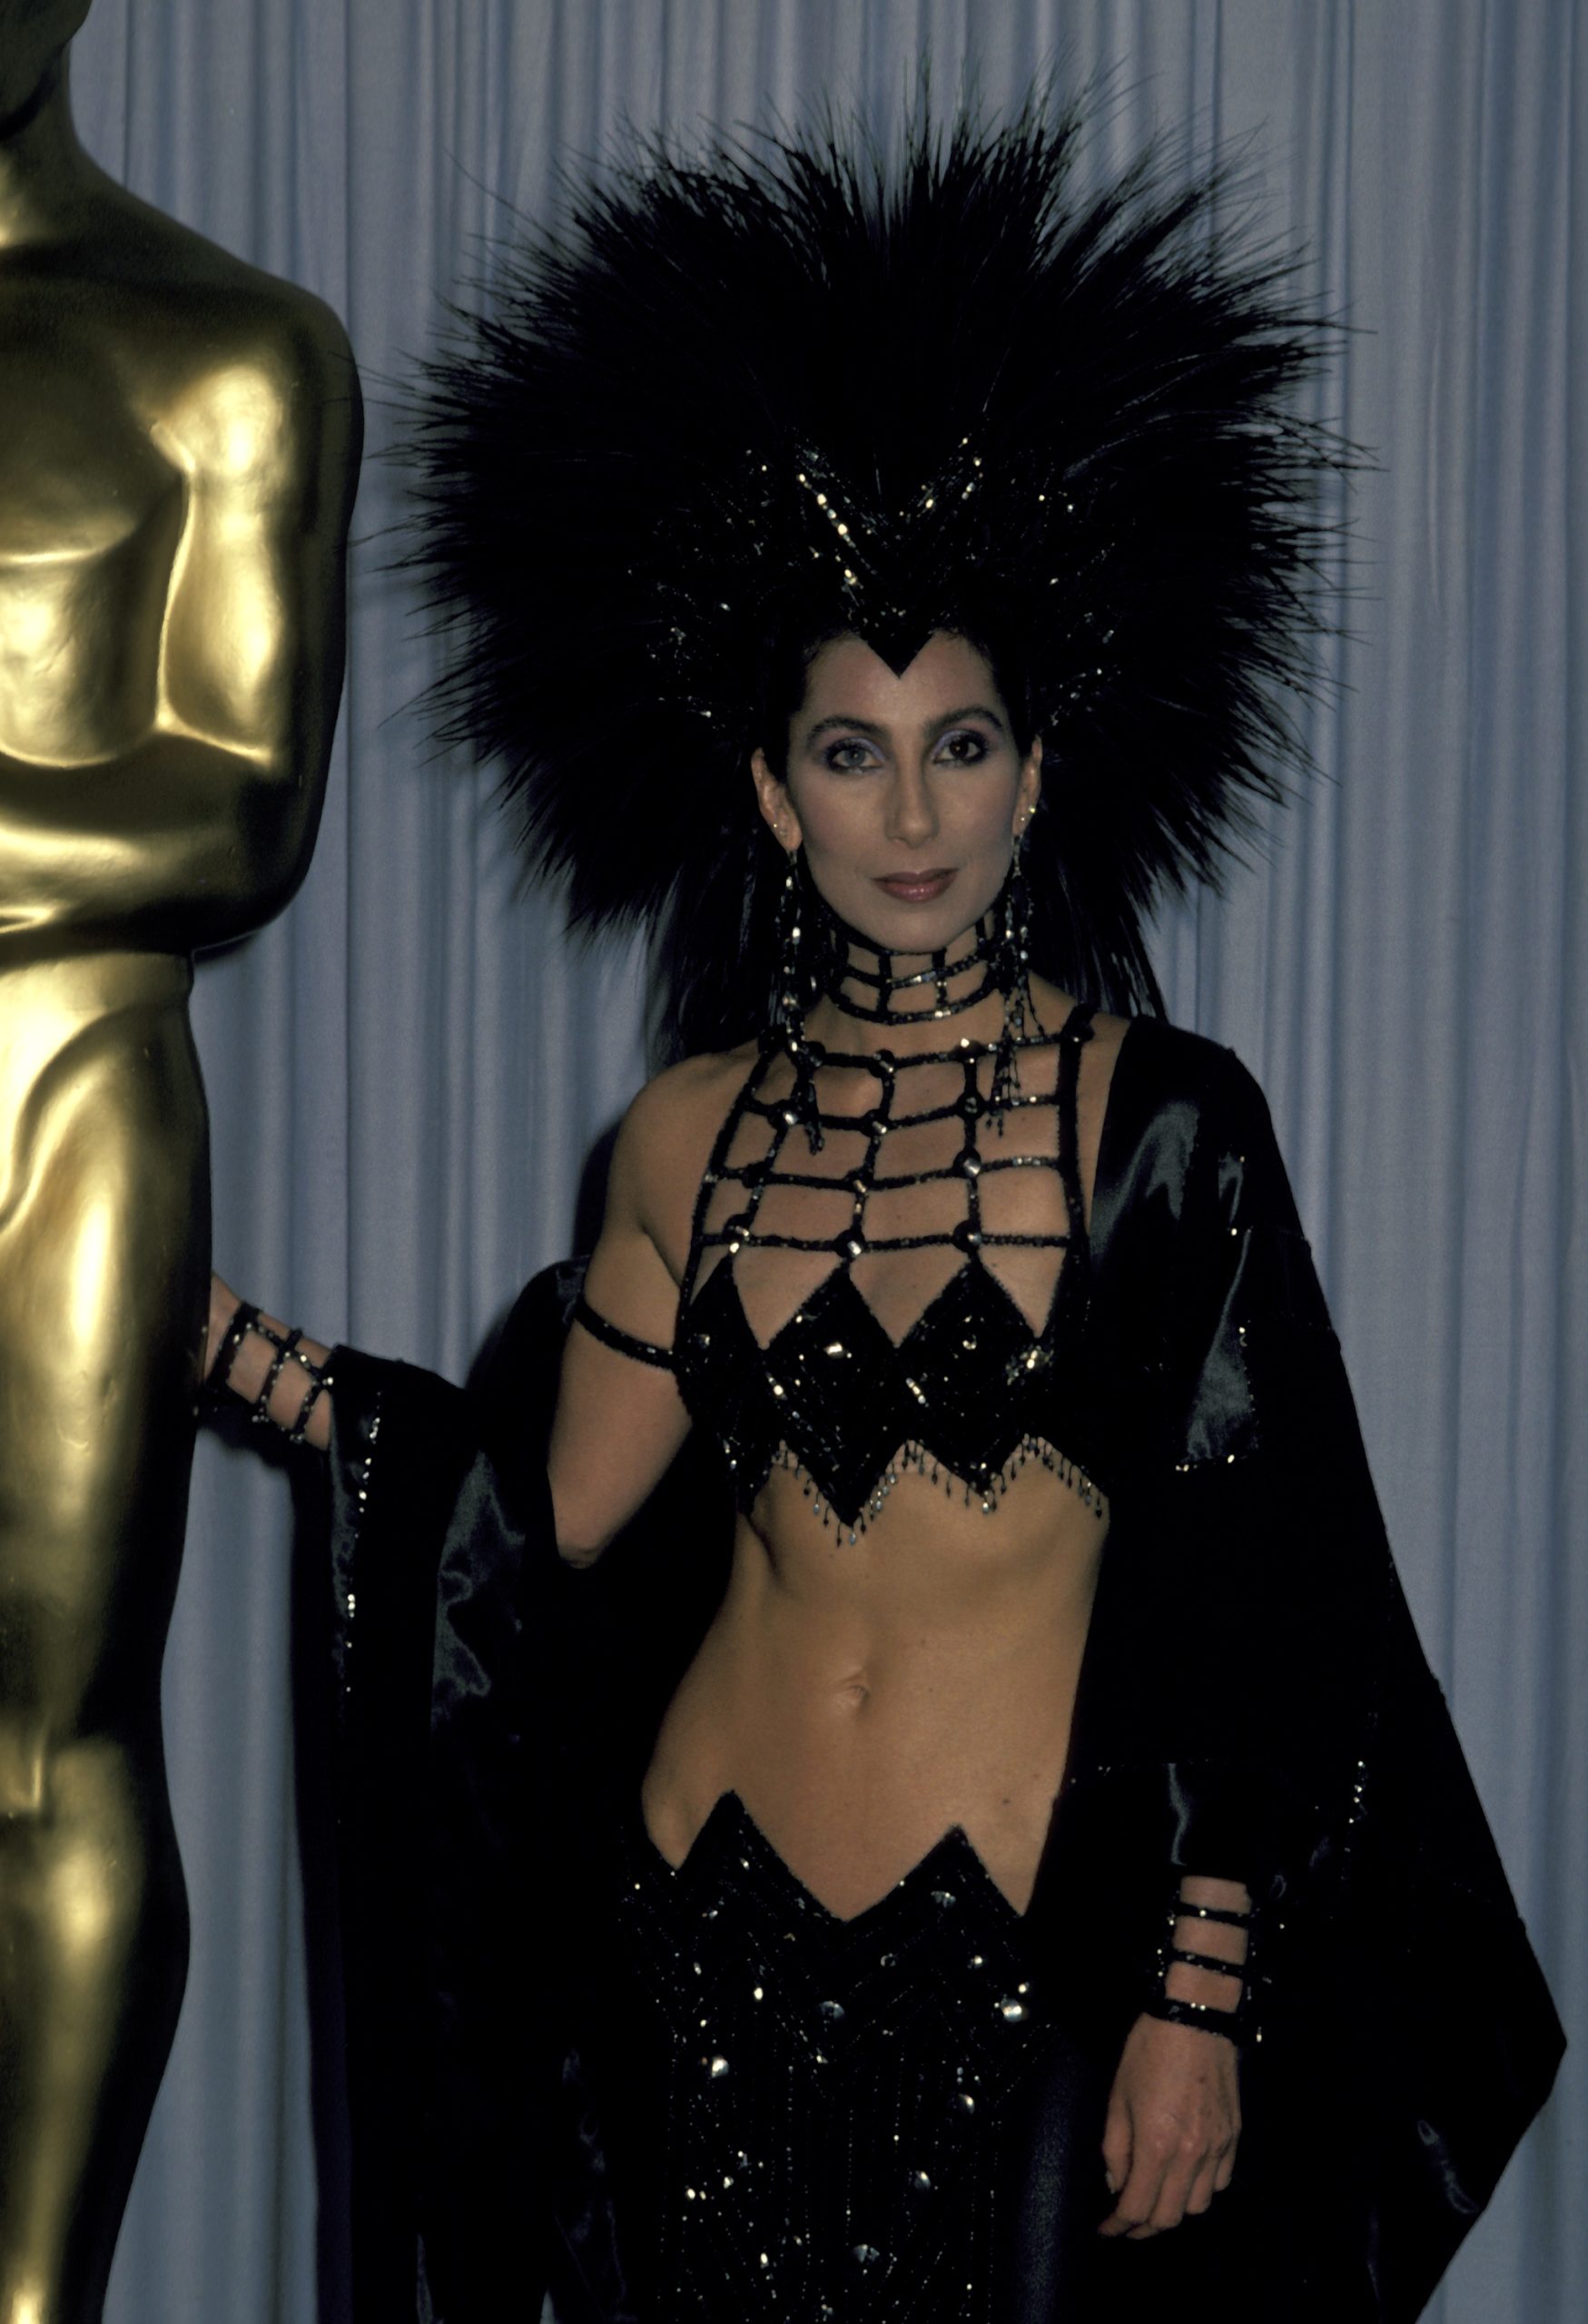 Cher 1986-ban viselte ezt az egyedülálló Bob Mackie fekete flitteres ruhaegyüttest, amely egy felsőből, szoknyából és tollas fejfedőből állt.